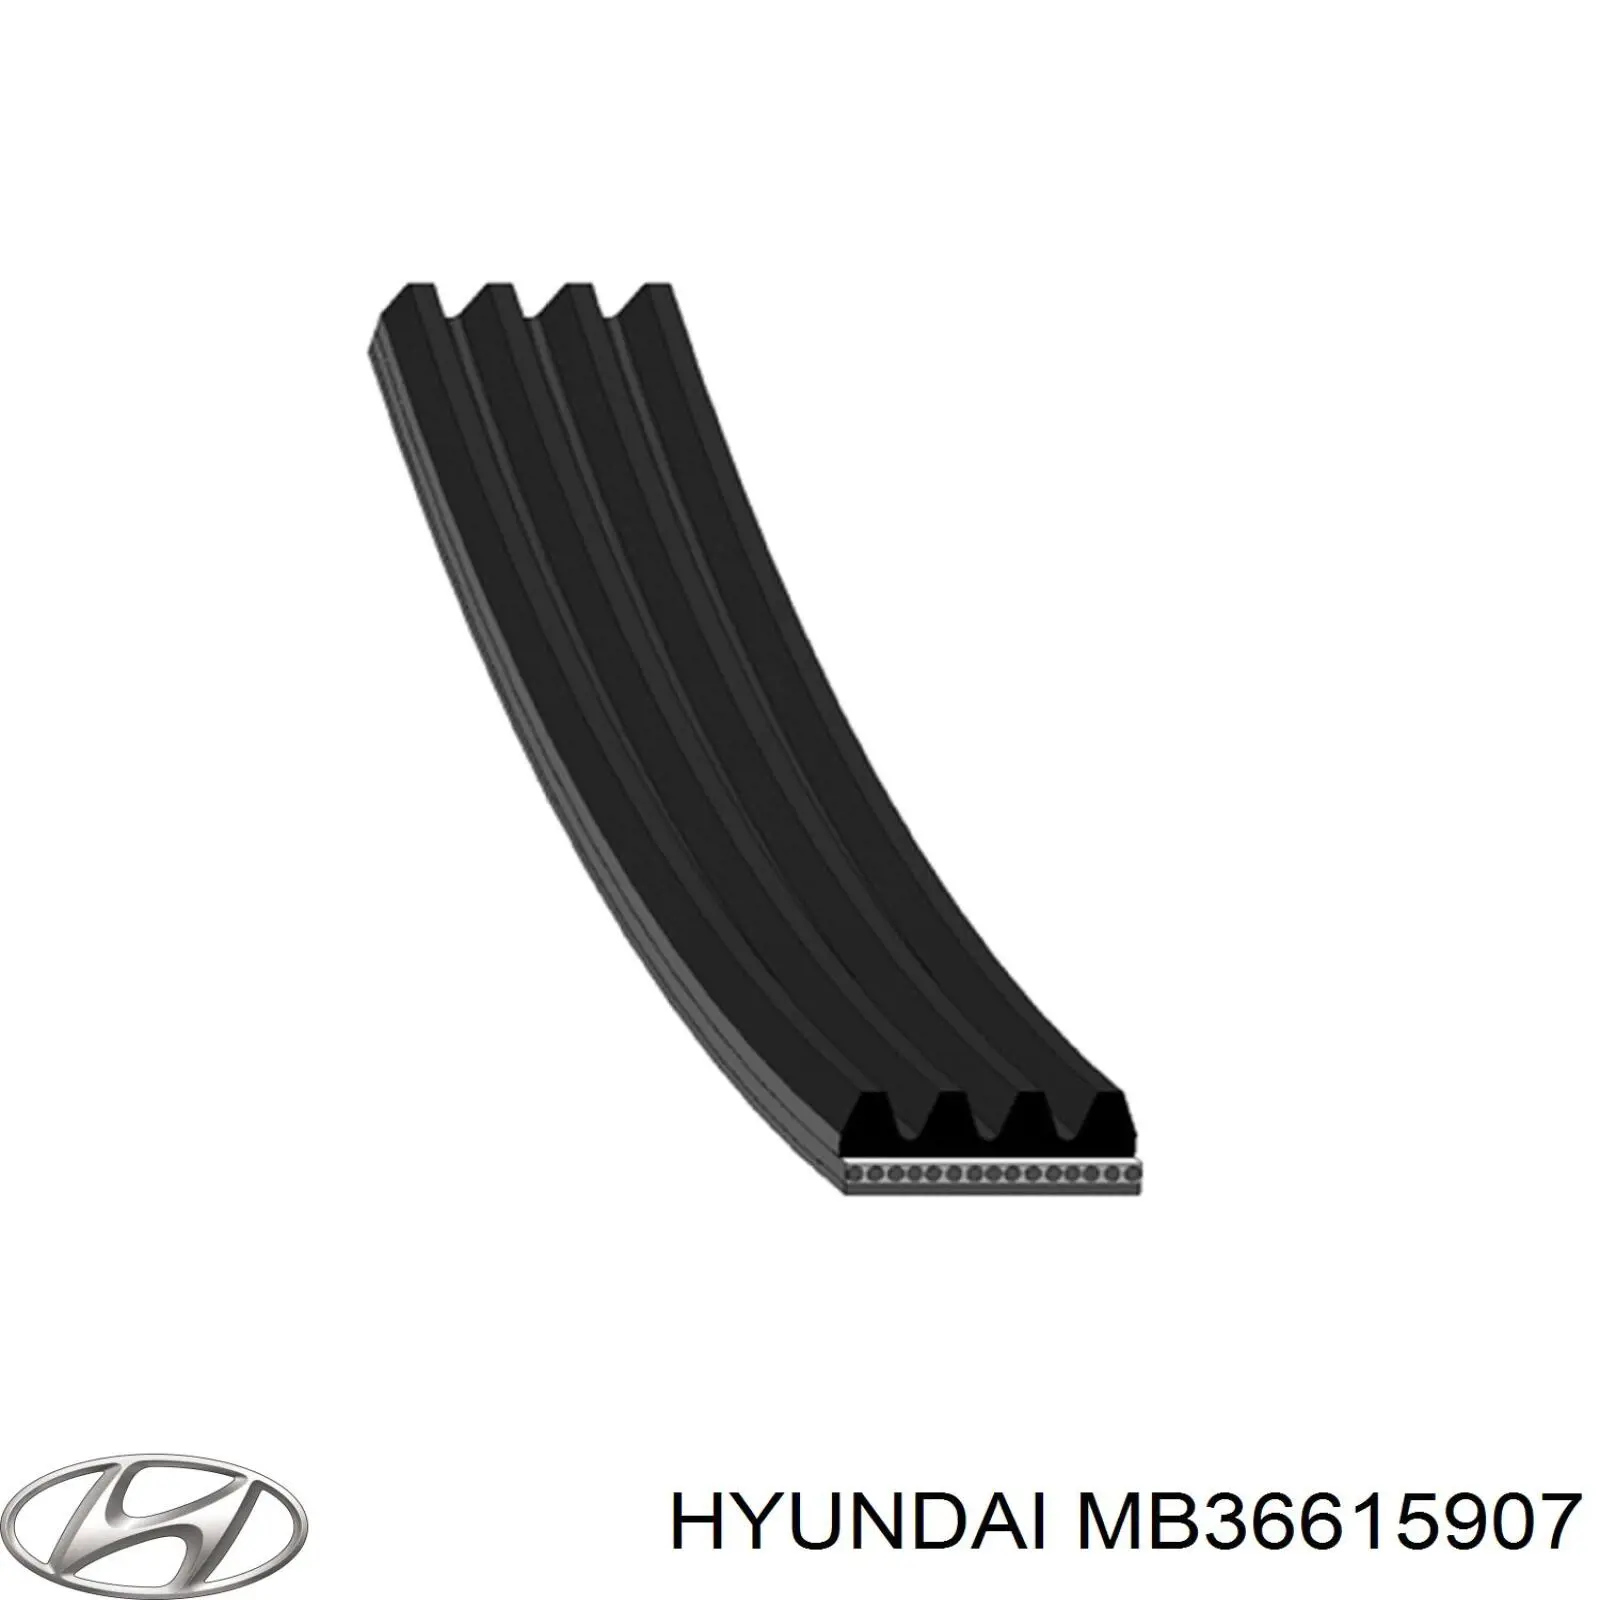 MB36615907 Hyundai/Kia correa trapezoidal